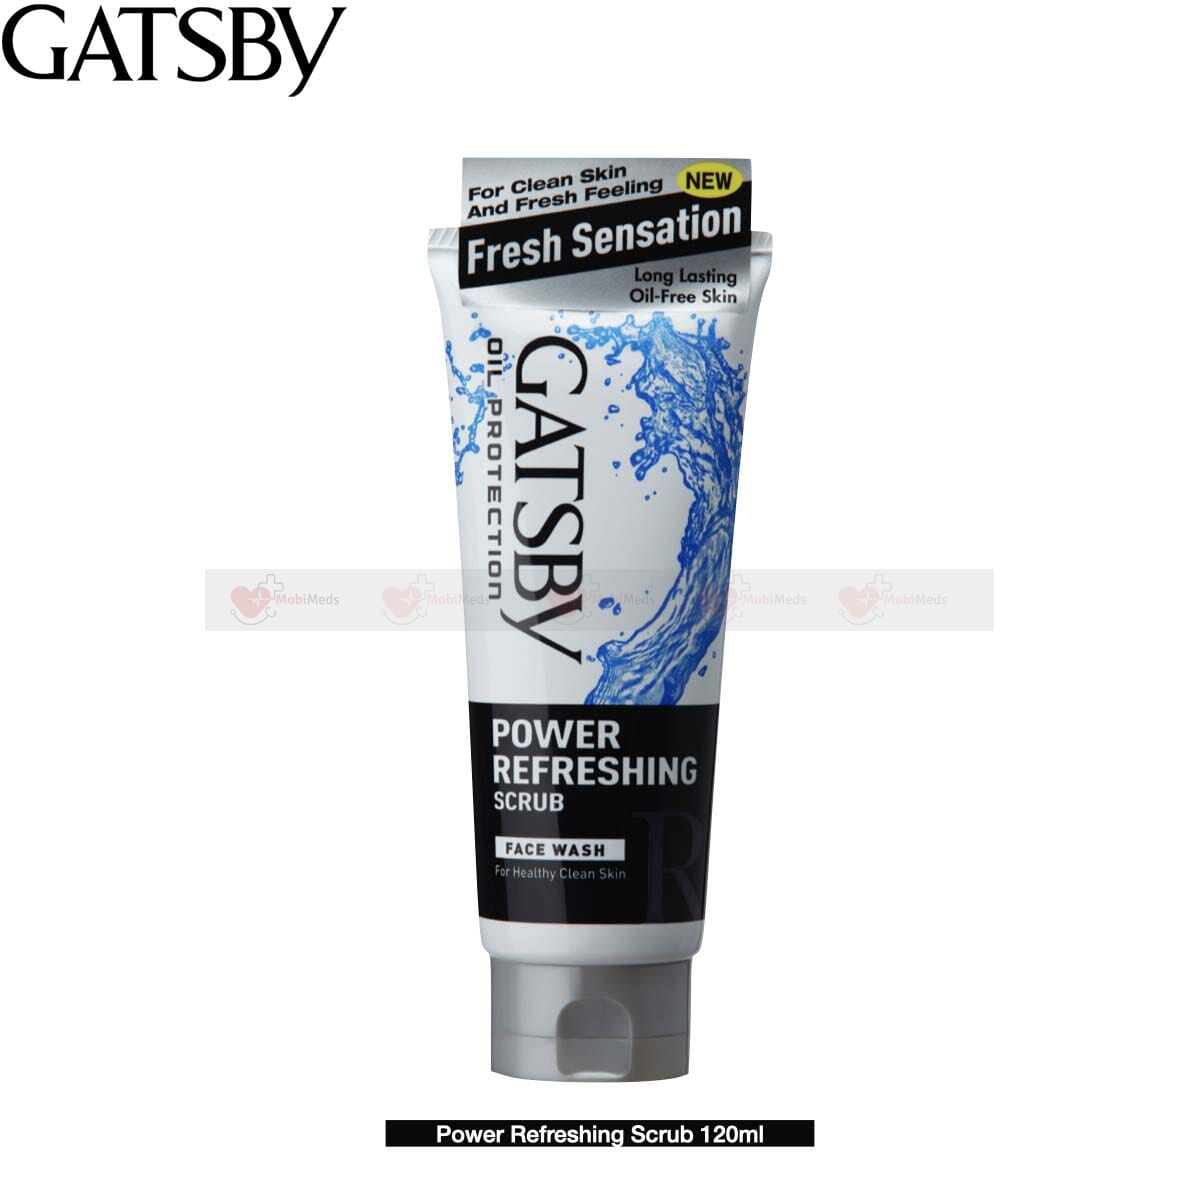 Gatsby Facewash 120GM - POWER REFRESHING